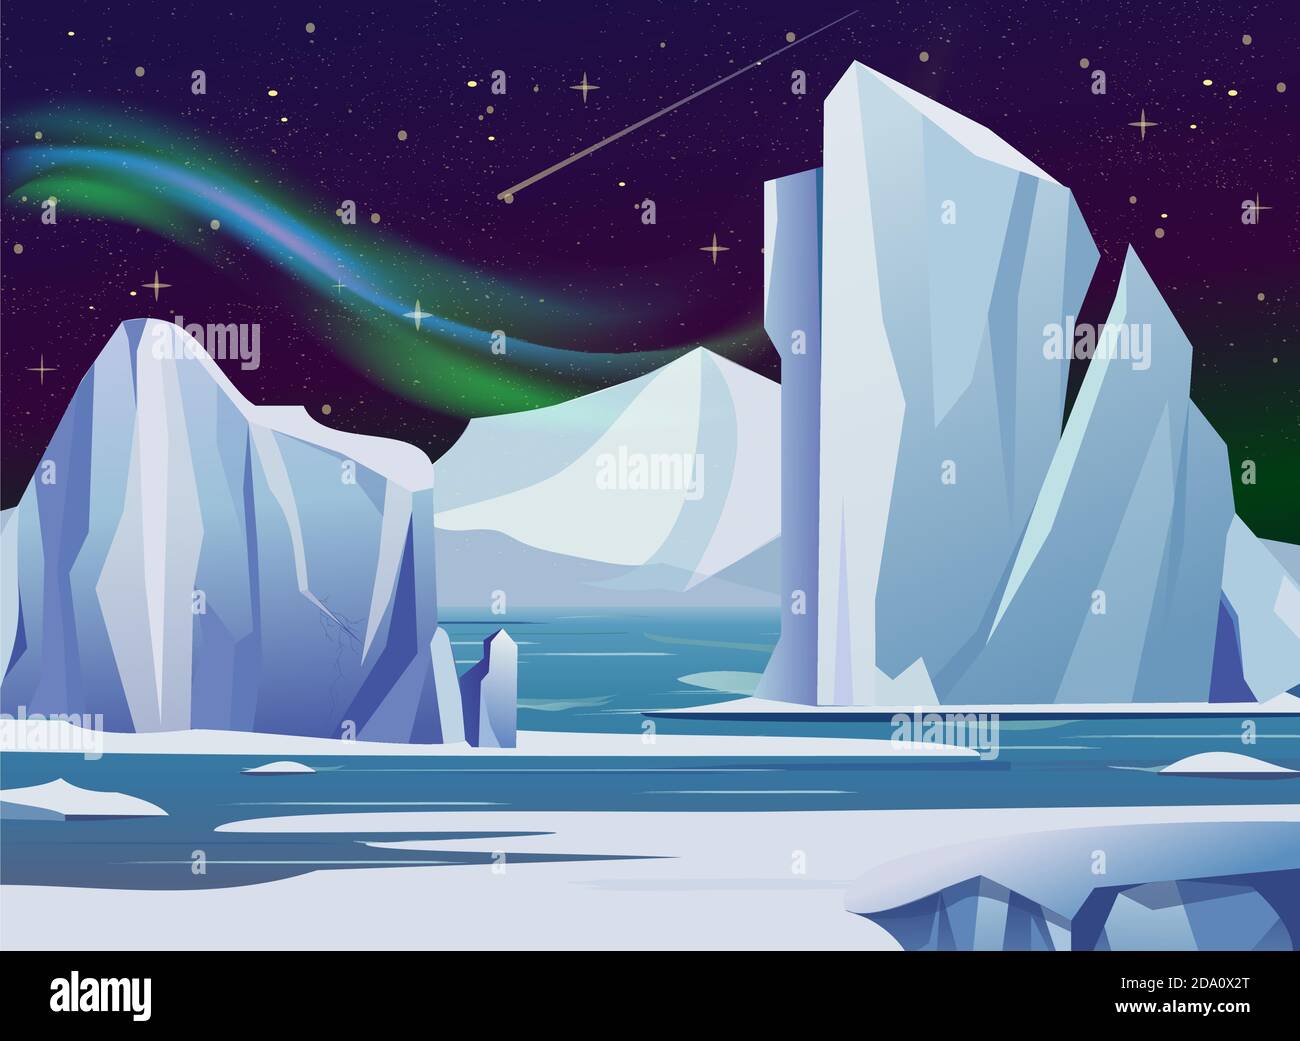 Illustration vectorielle paysage arctique de nuit avec, iceberg et montagnes. Climat froid hiver fond lumières polaires et étoiles. Illustration de Vecteur